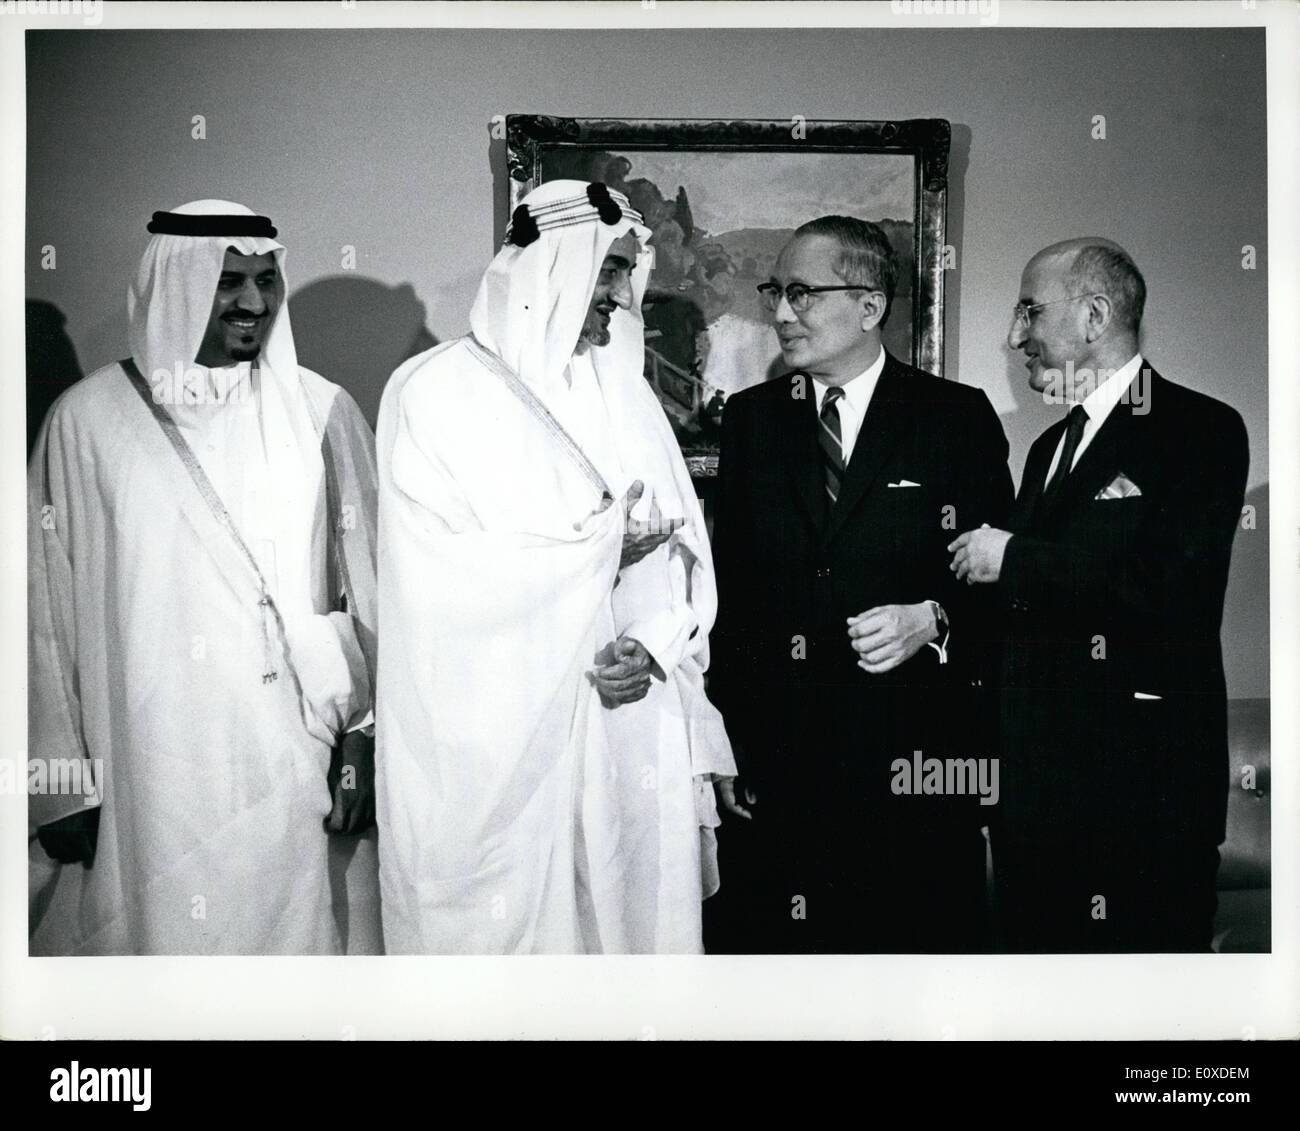 6. Juni 1966 - seine Majestät Faisal Bin Abdulaziz besucht UN-Hauptquartier: seine Majestät Faisal Bin Abdulaziz, König von Saudi-Arabien, hat einen offiziellen Besuch abgestattet Amtssitz der Vereinten Nationen heute. Begleitet wurde er bei seinem Besuch von Minister der Verteidigung, Prinz Sultan Bin Abdulaziz; ein Royal-Ratgeber; und der Stellvertreter des Ständigen Vertreters von Saudi Arabien bei den Vereinten Nationen, Jamil M. Baroody, während seines Besuchs König Faisal verliehen mit dem Generalsekretär und seinen Gast an einem Mittagessen war. König Faisal im Gespräch mit Staatssekretär Genral U Thant Stockfoto